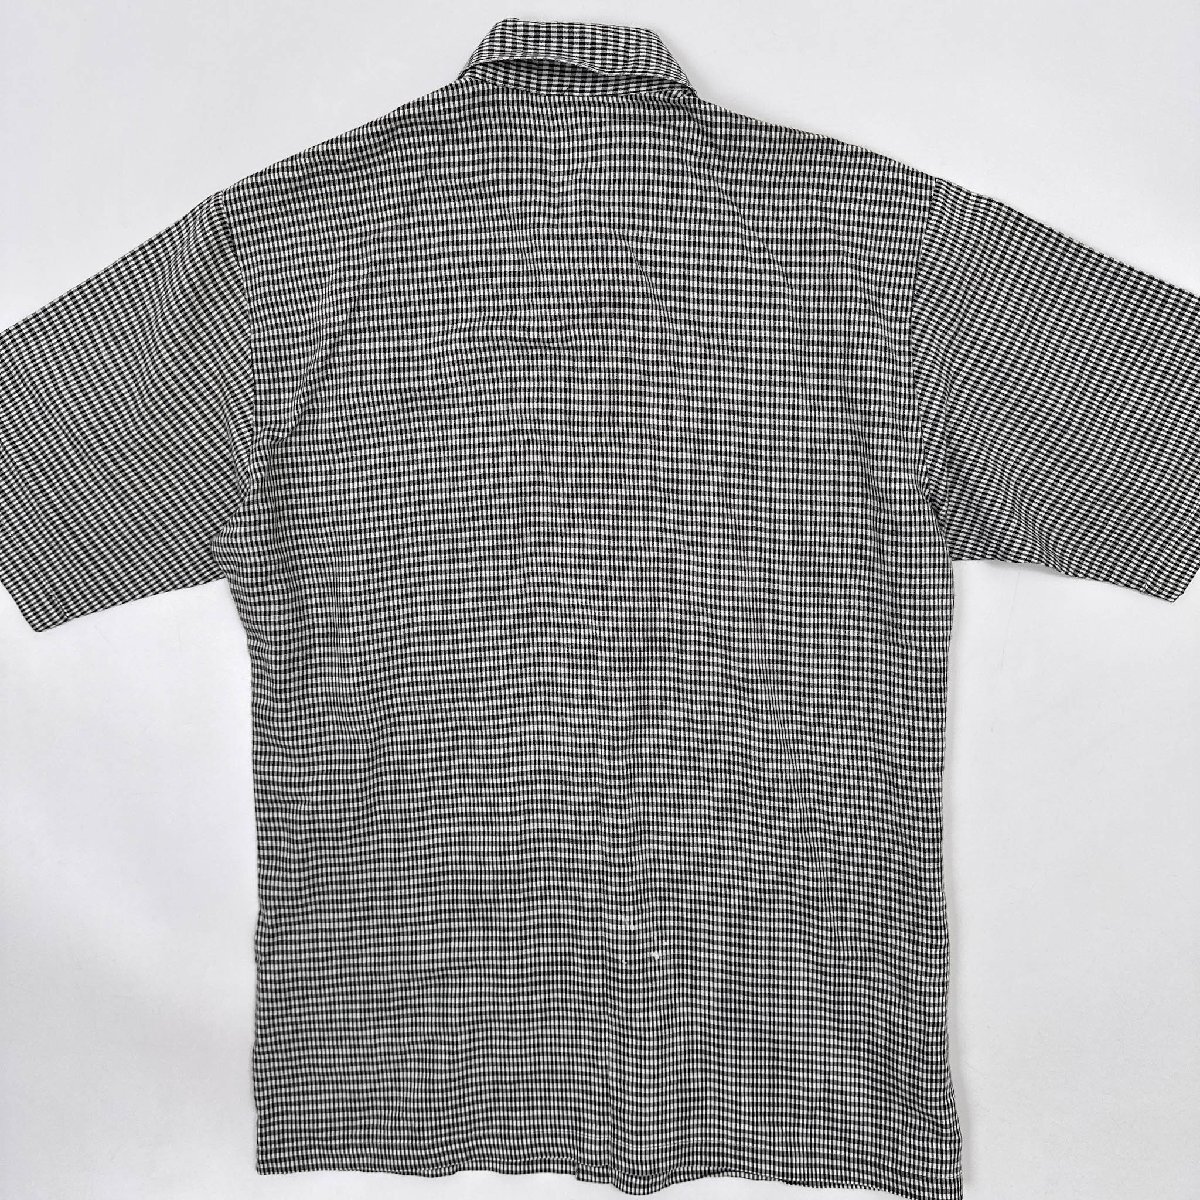 linen.*BLACKPIA черный Piaa в клетку рубашка с коротким рукавом ( M ) / мужской джентльмен Leica сделано в Японии лен 